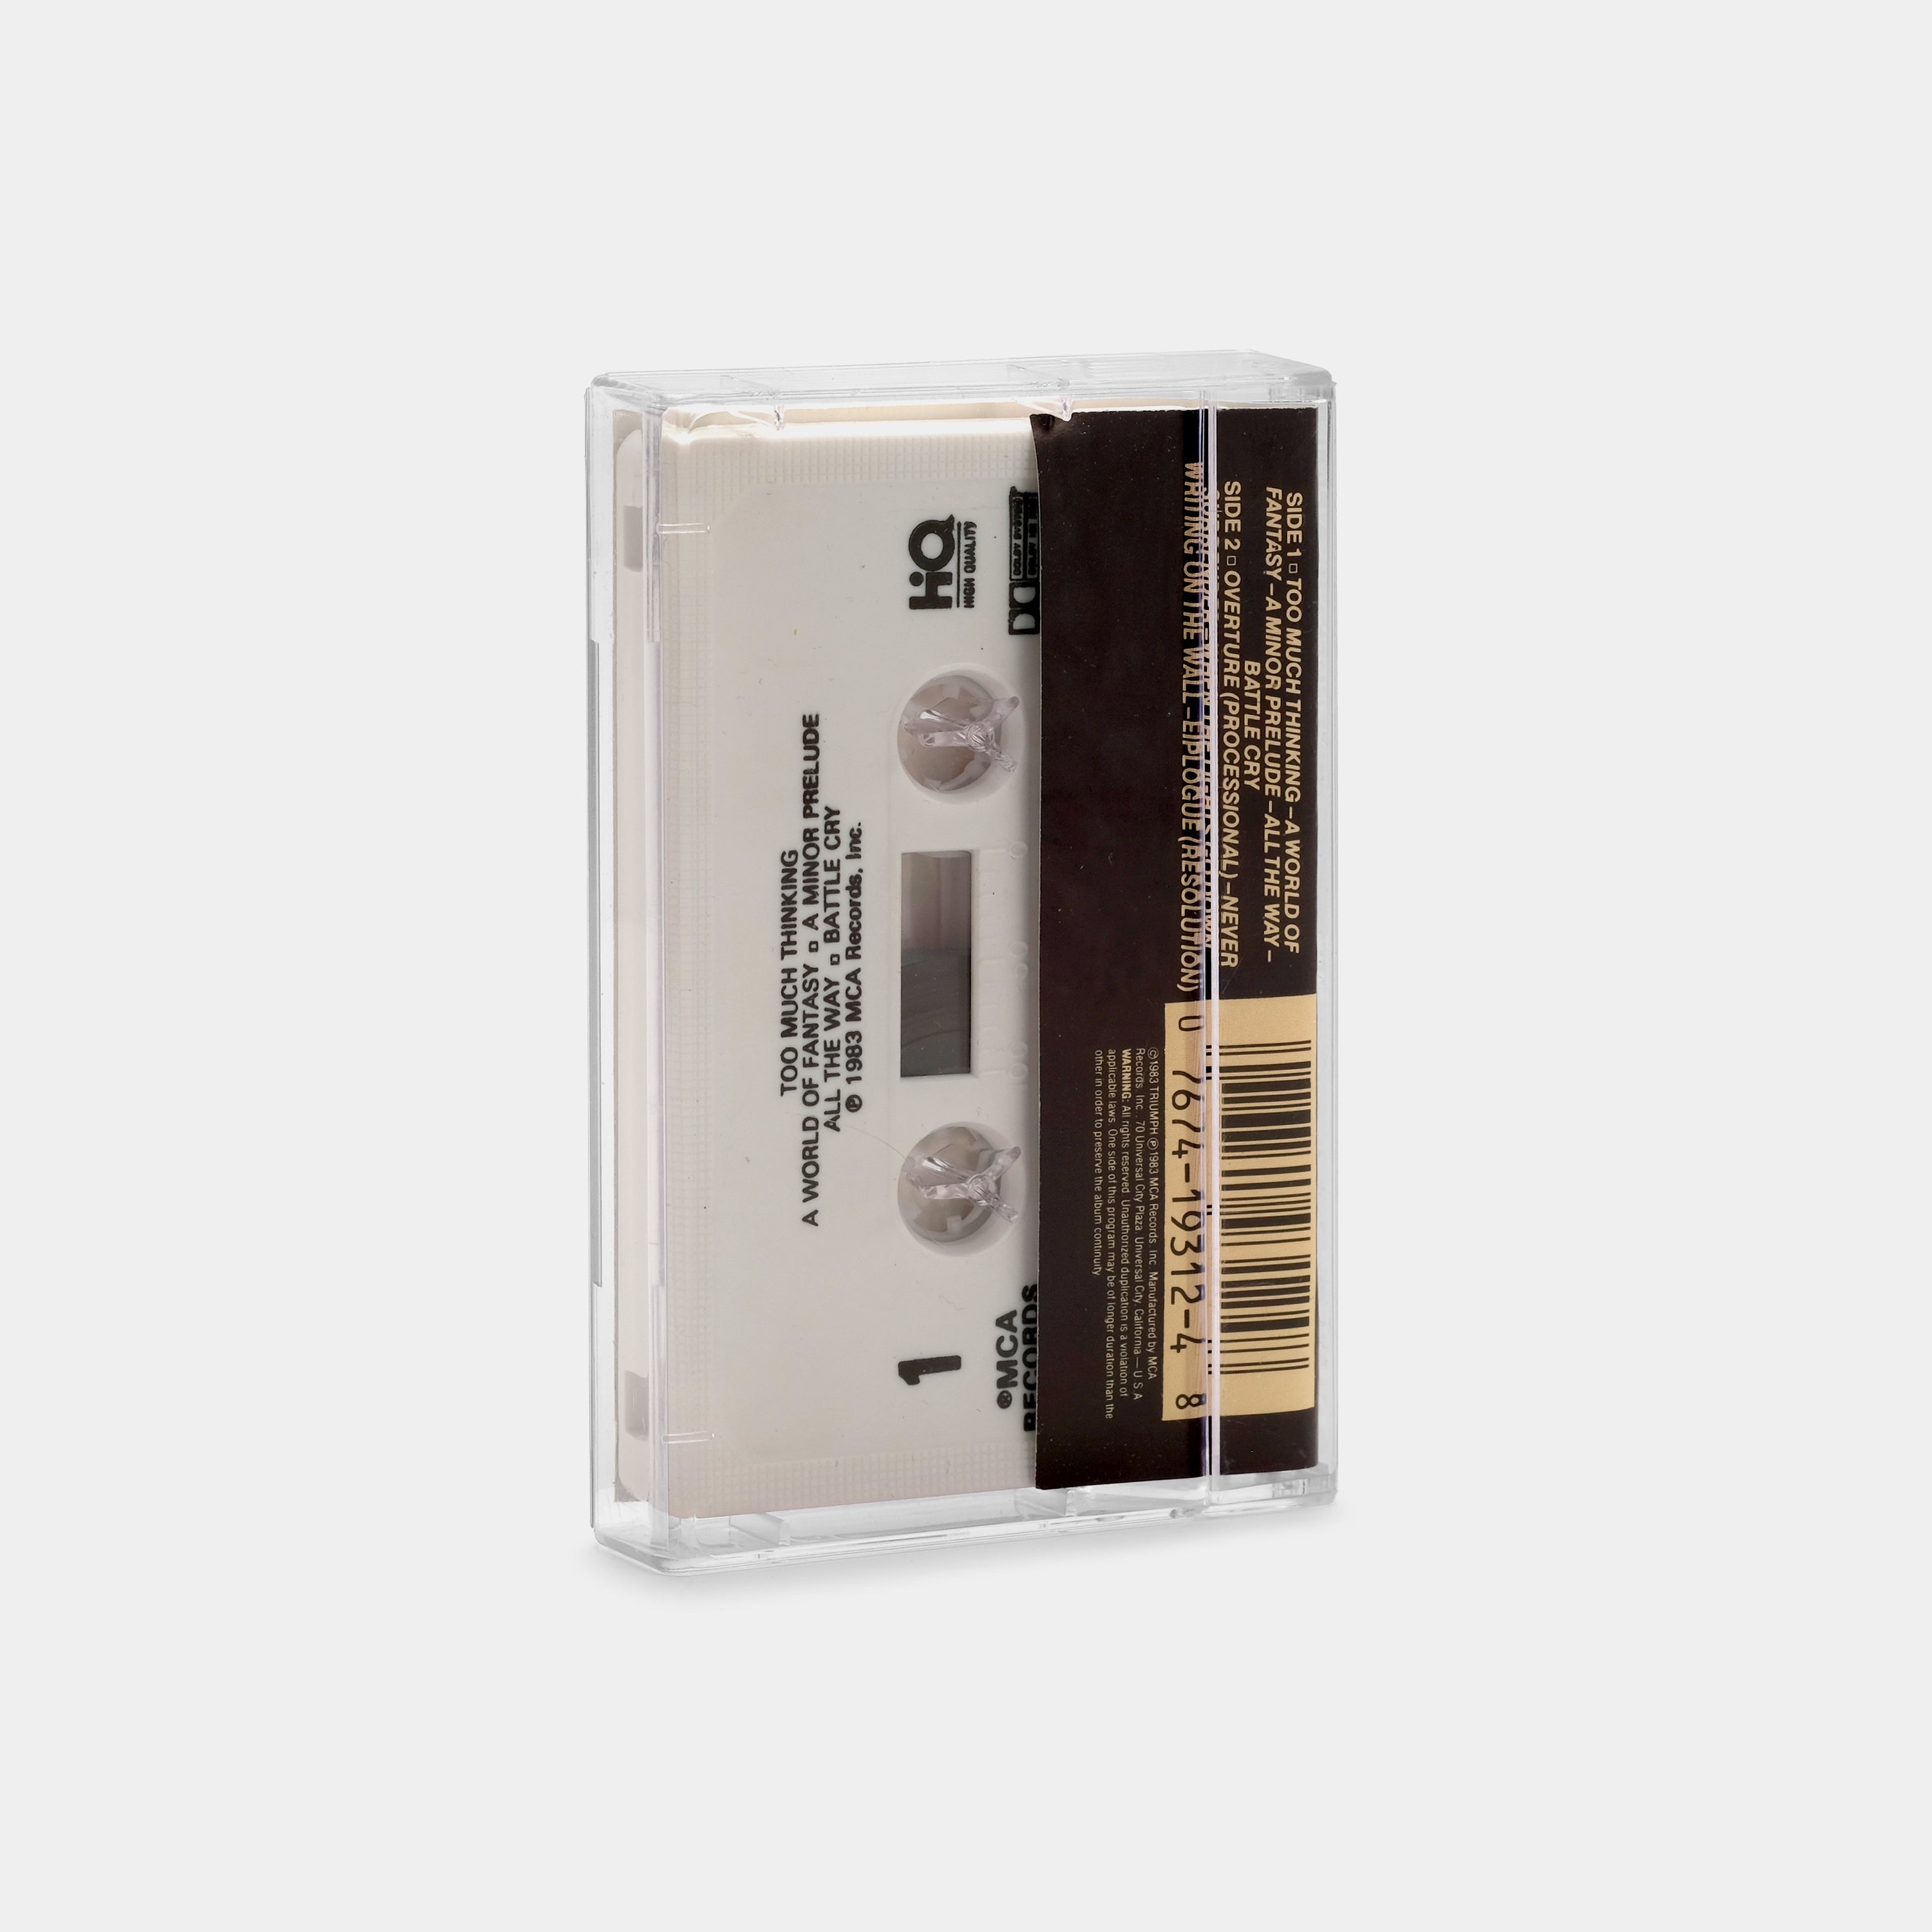 Triumph - Never Surrender Cassette Tape